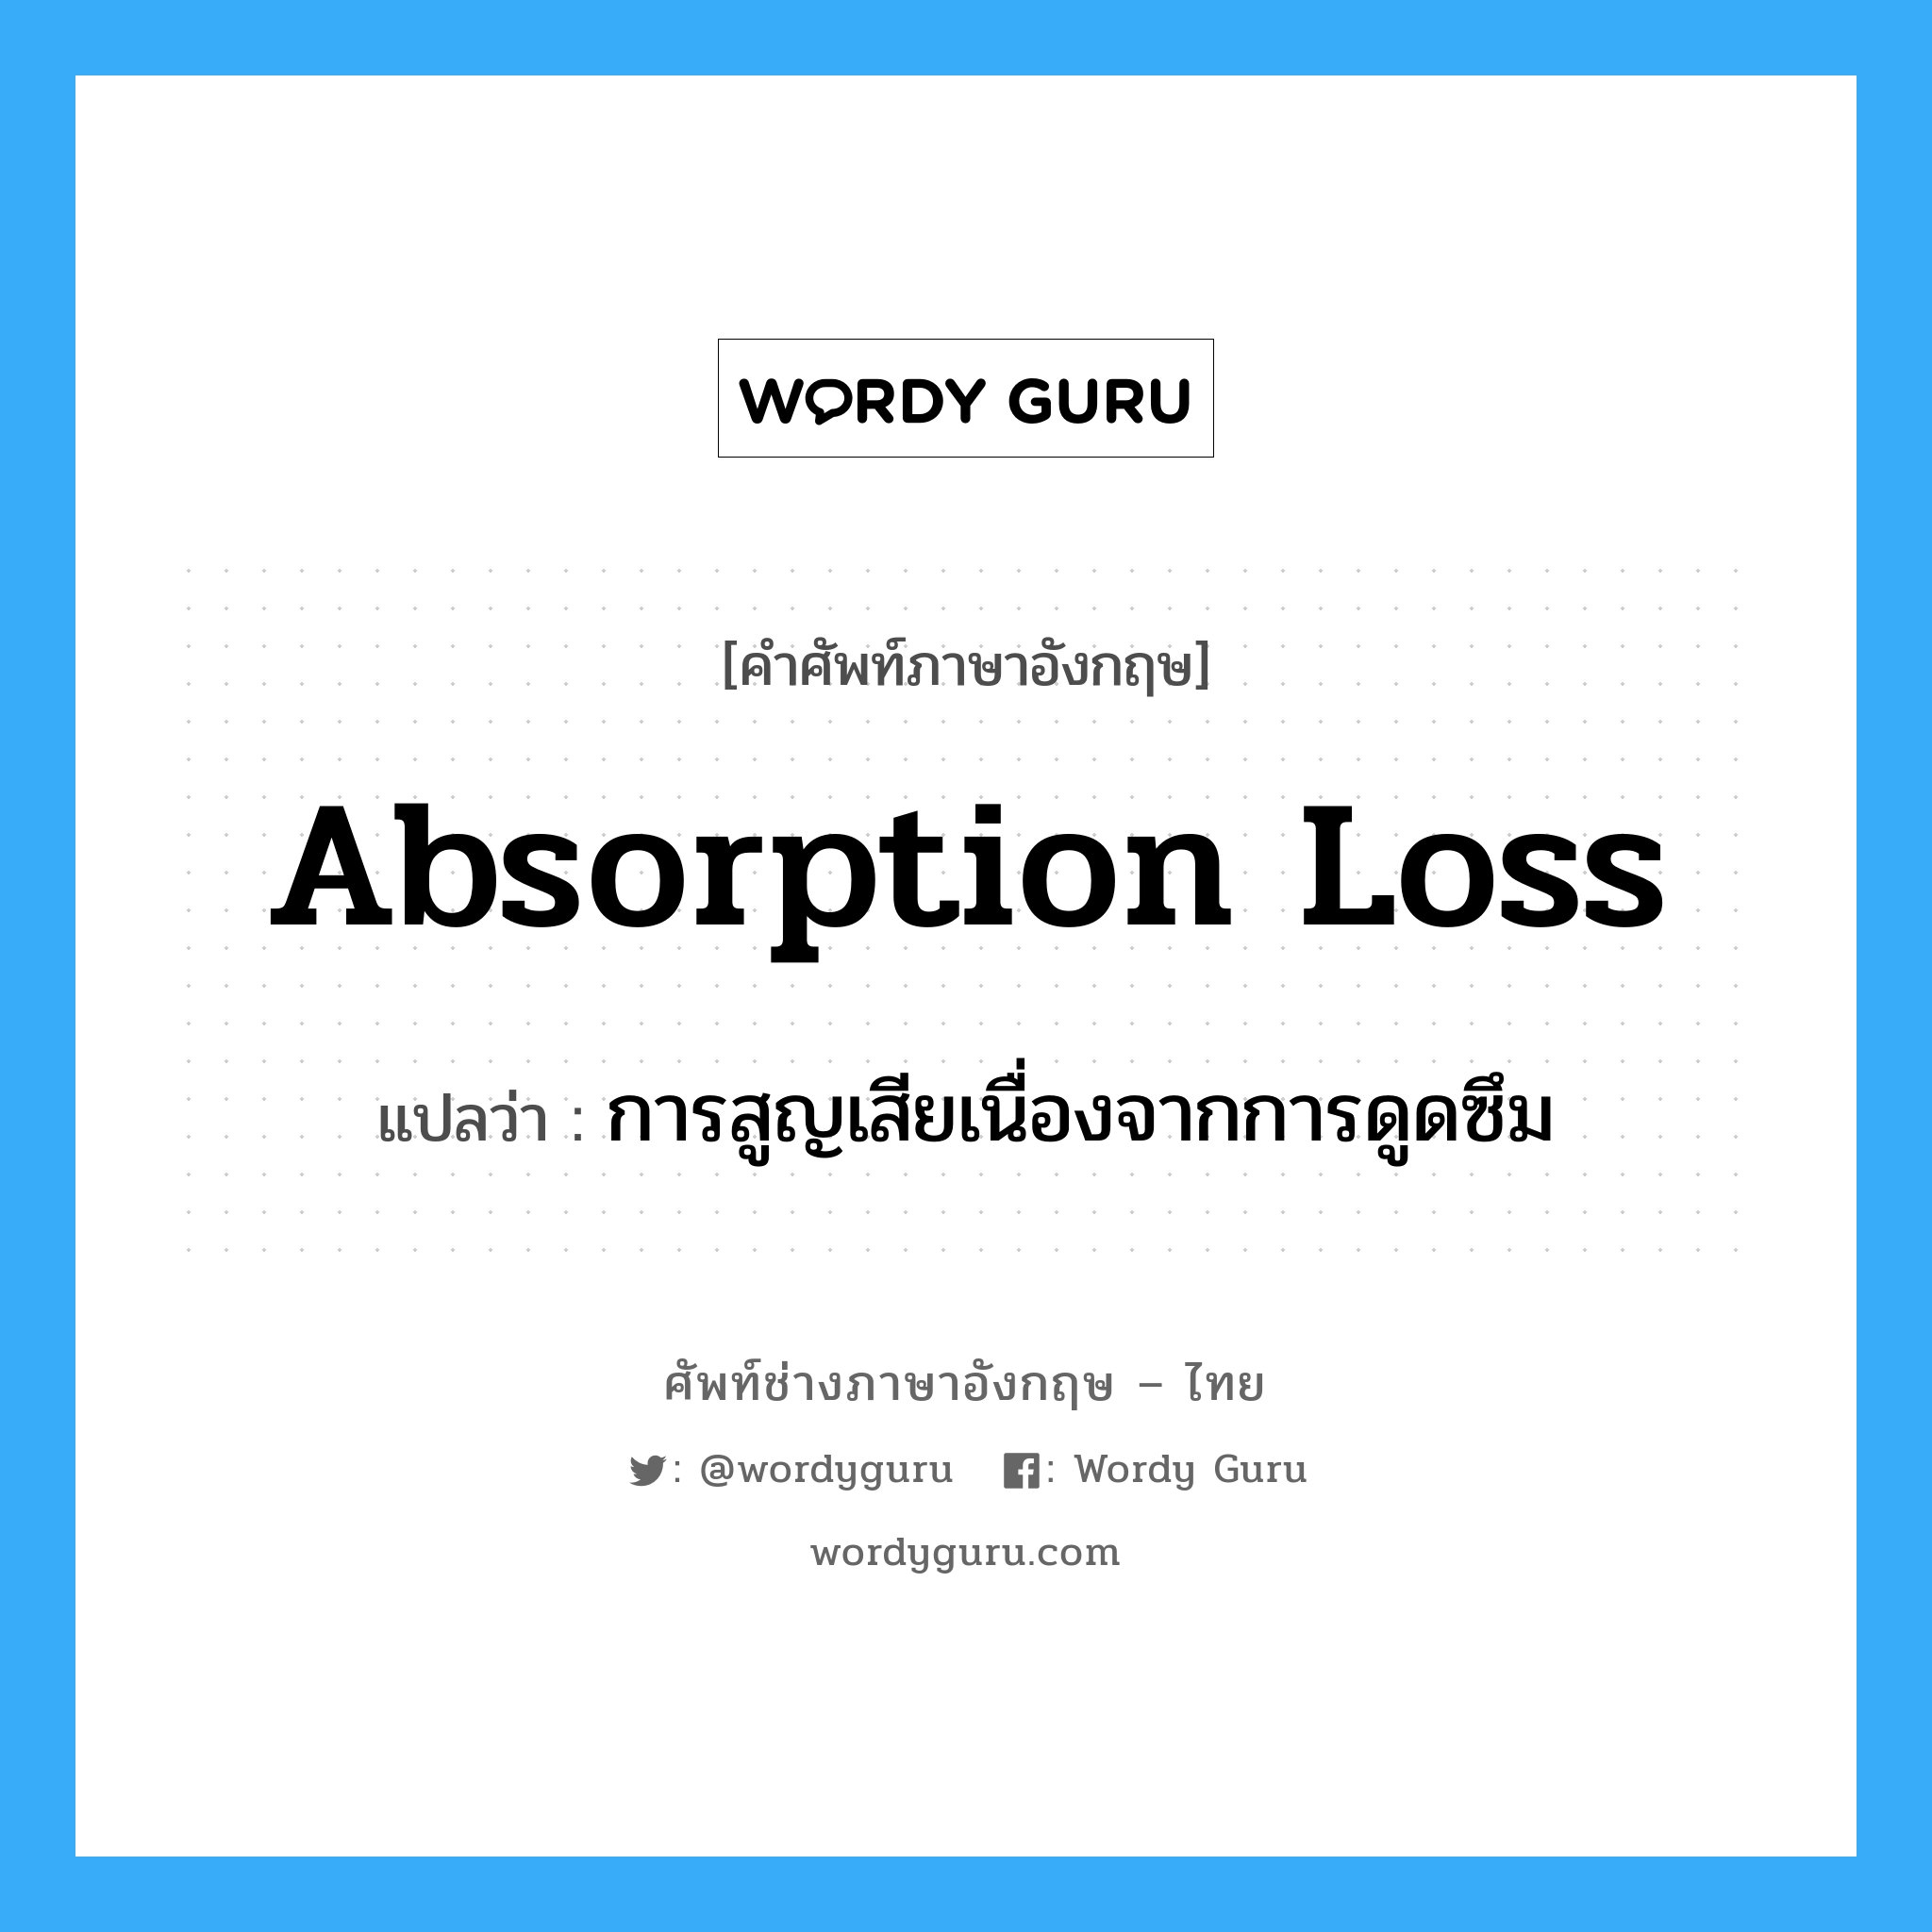 absorption loss แปลว่า?, คำศัพท์ช่างภาษาอังกฤษ - ไทย absorption loss คำศัพท์ภาษาอังกฤษ absorption loss แปลว่า การสูญเสียเนื่องจากการดูดซึม